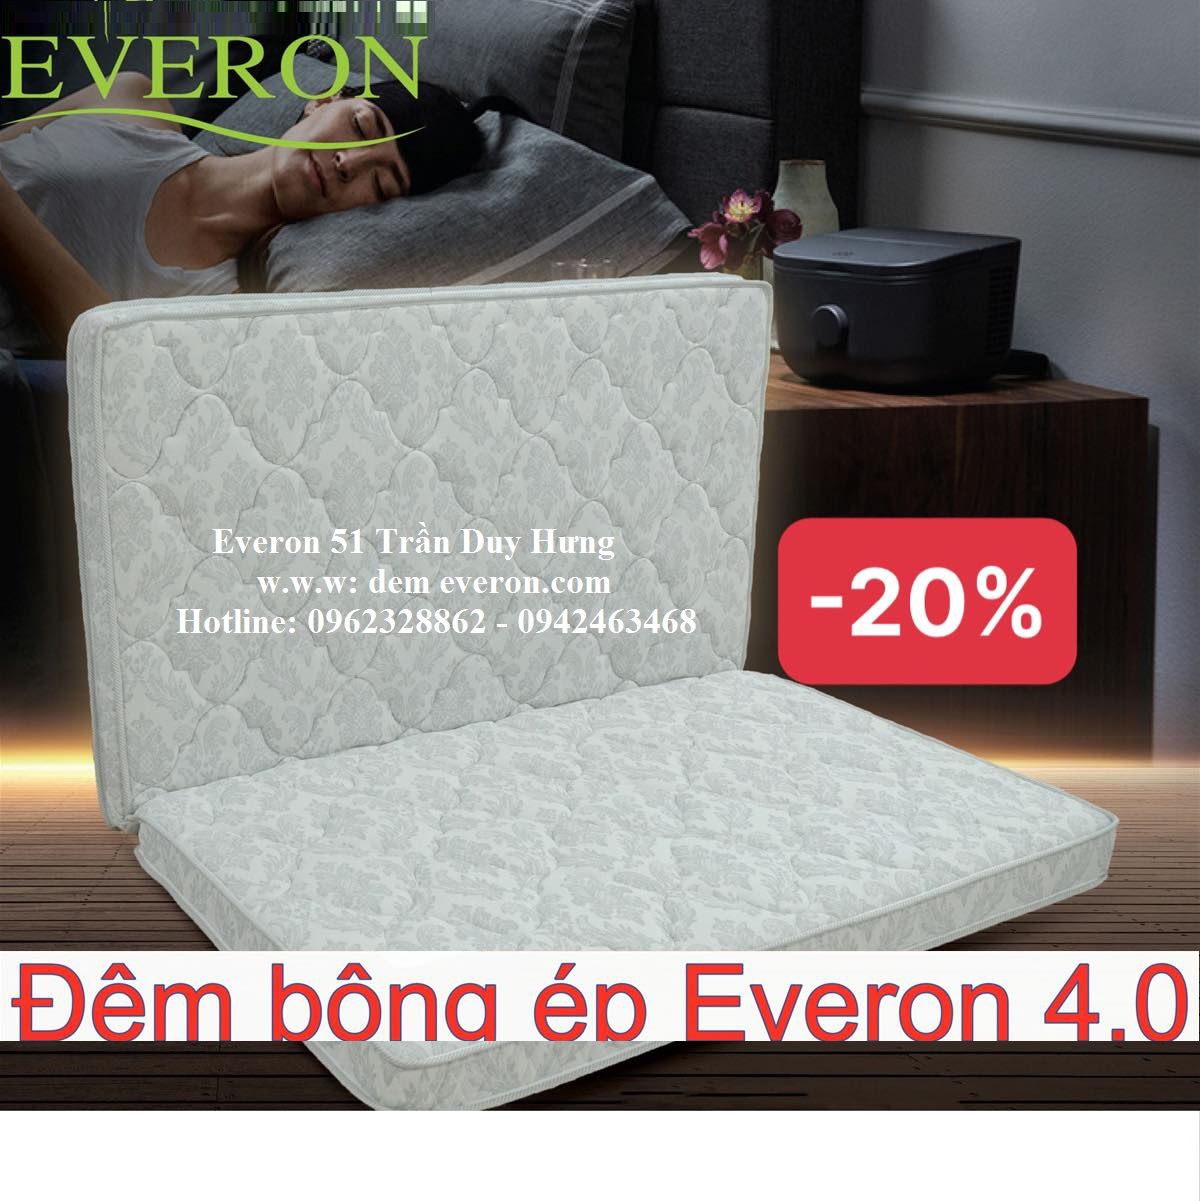 Đệm Everon 4.0